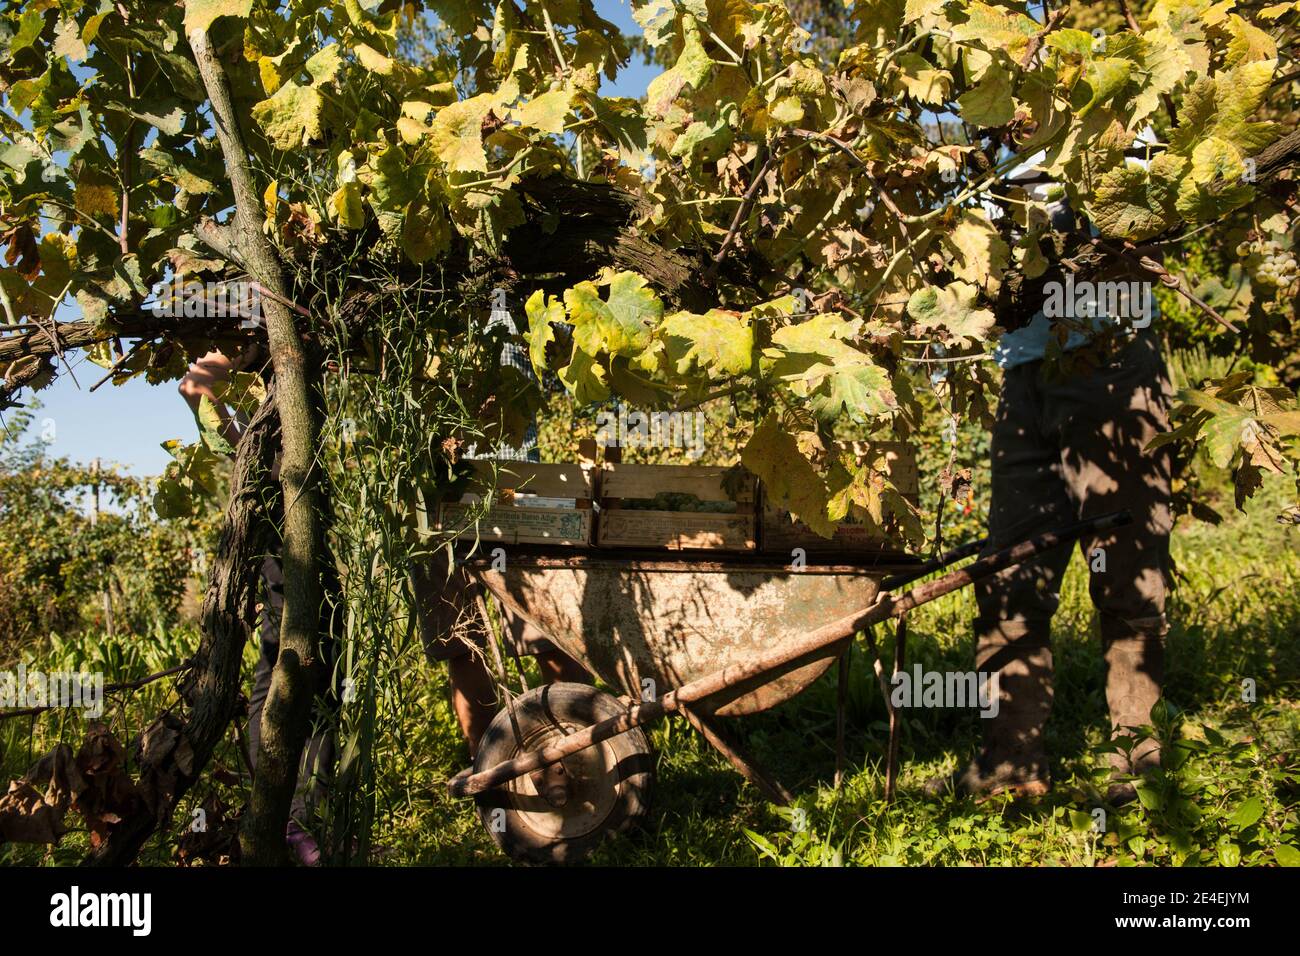 Venise - Île de Sant' Erasme. Vignobles de Dorona. Le raisin autochtone des îles de la lagune vénitienne. Banque D'Images